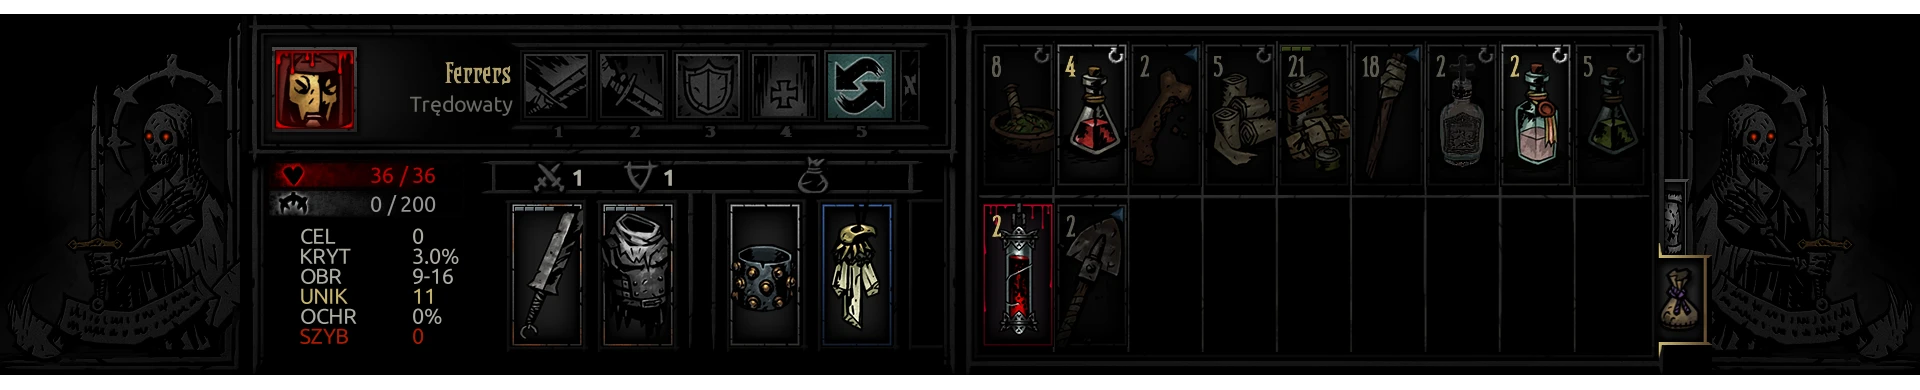 more inventory mod darkest dungeon